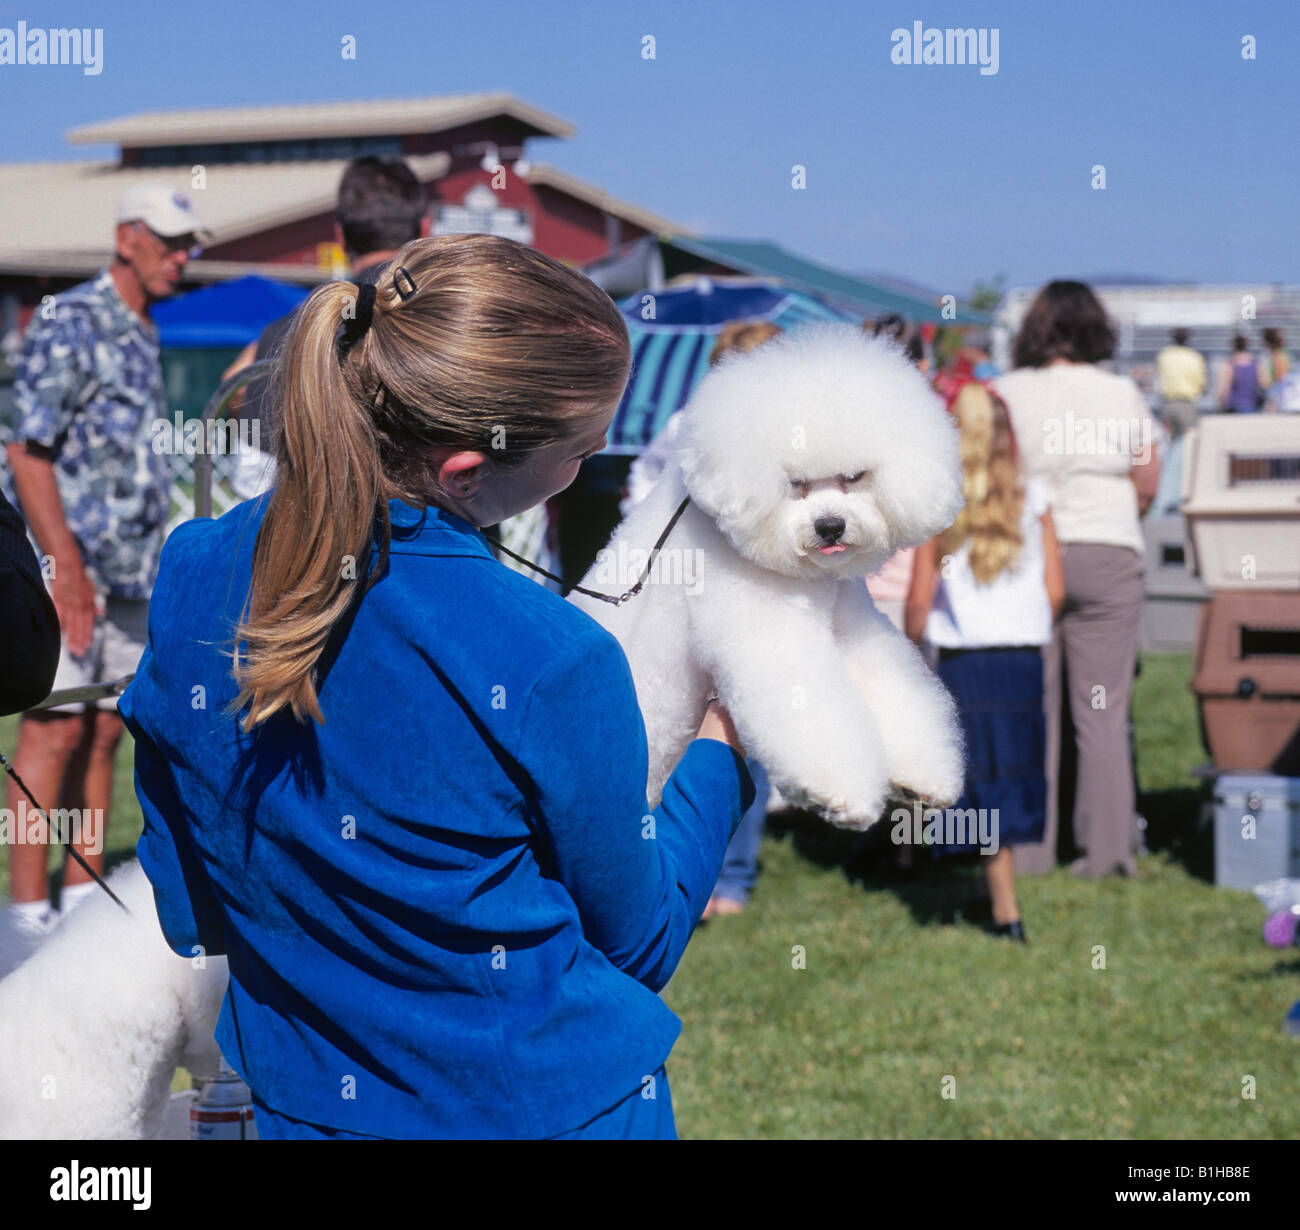 Bichon Frise donne au photographe un regard de dégoût à l'AKC American Kennel Club dog show Banque D'Images